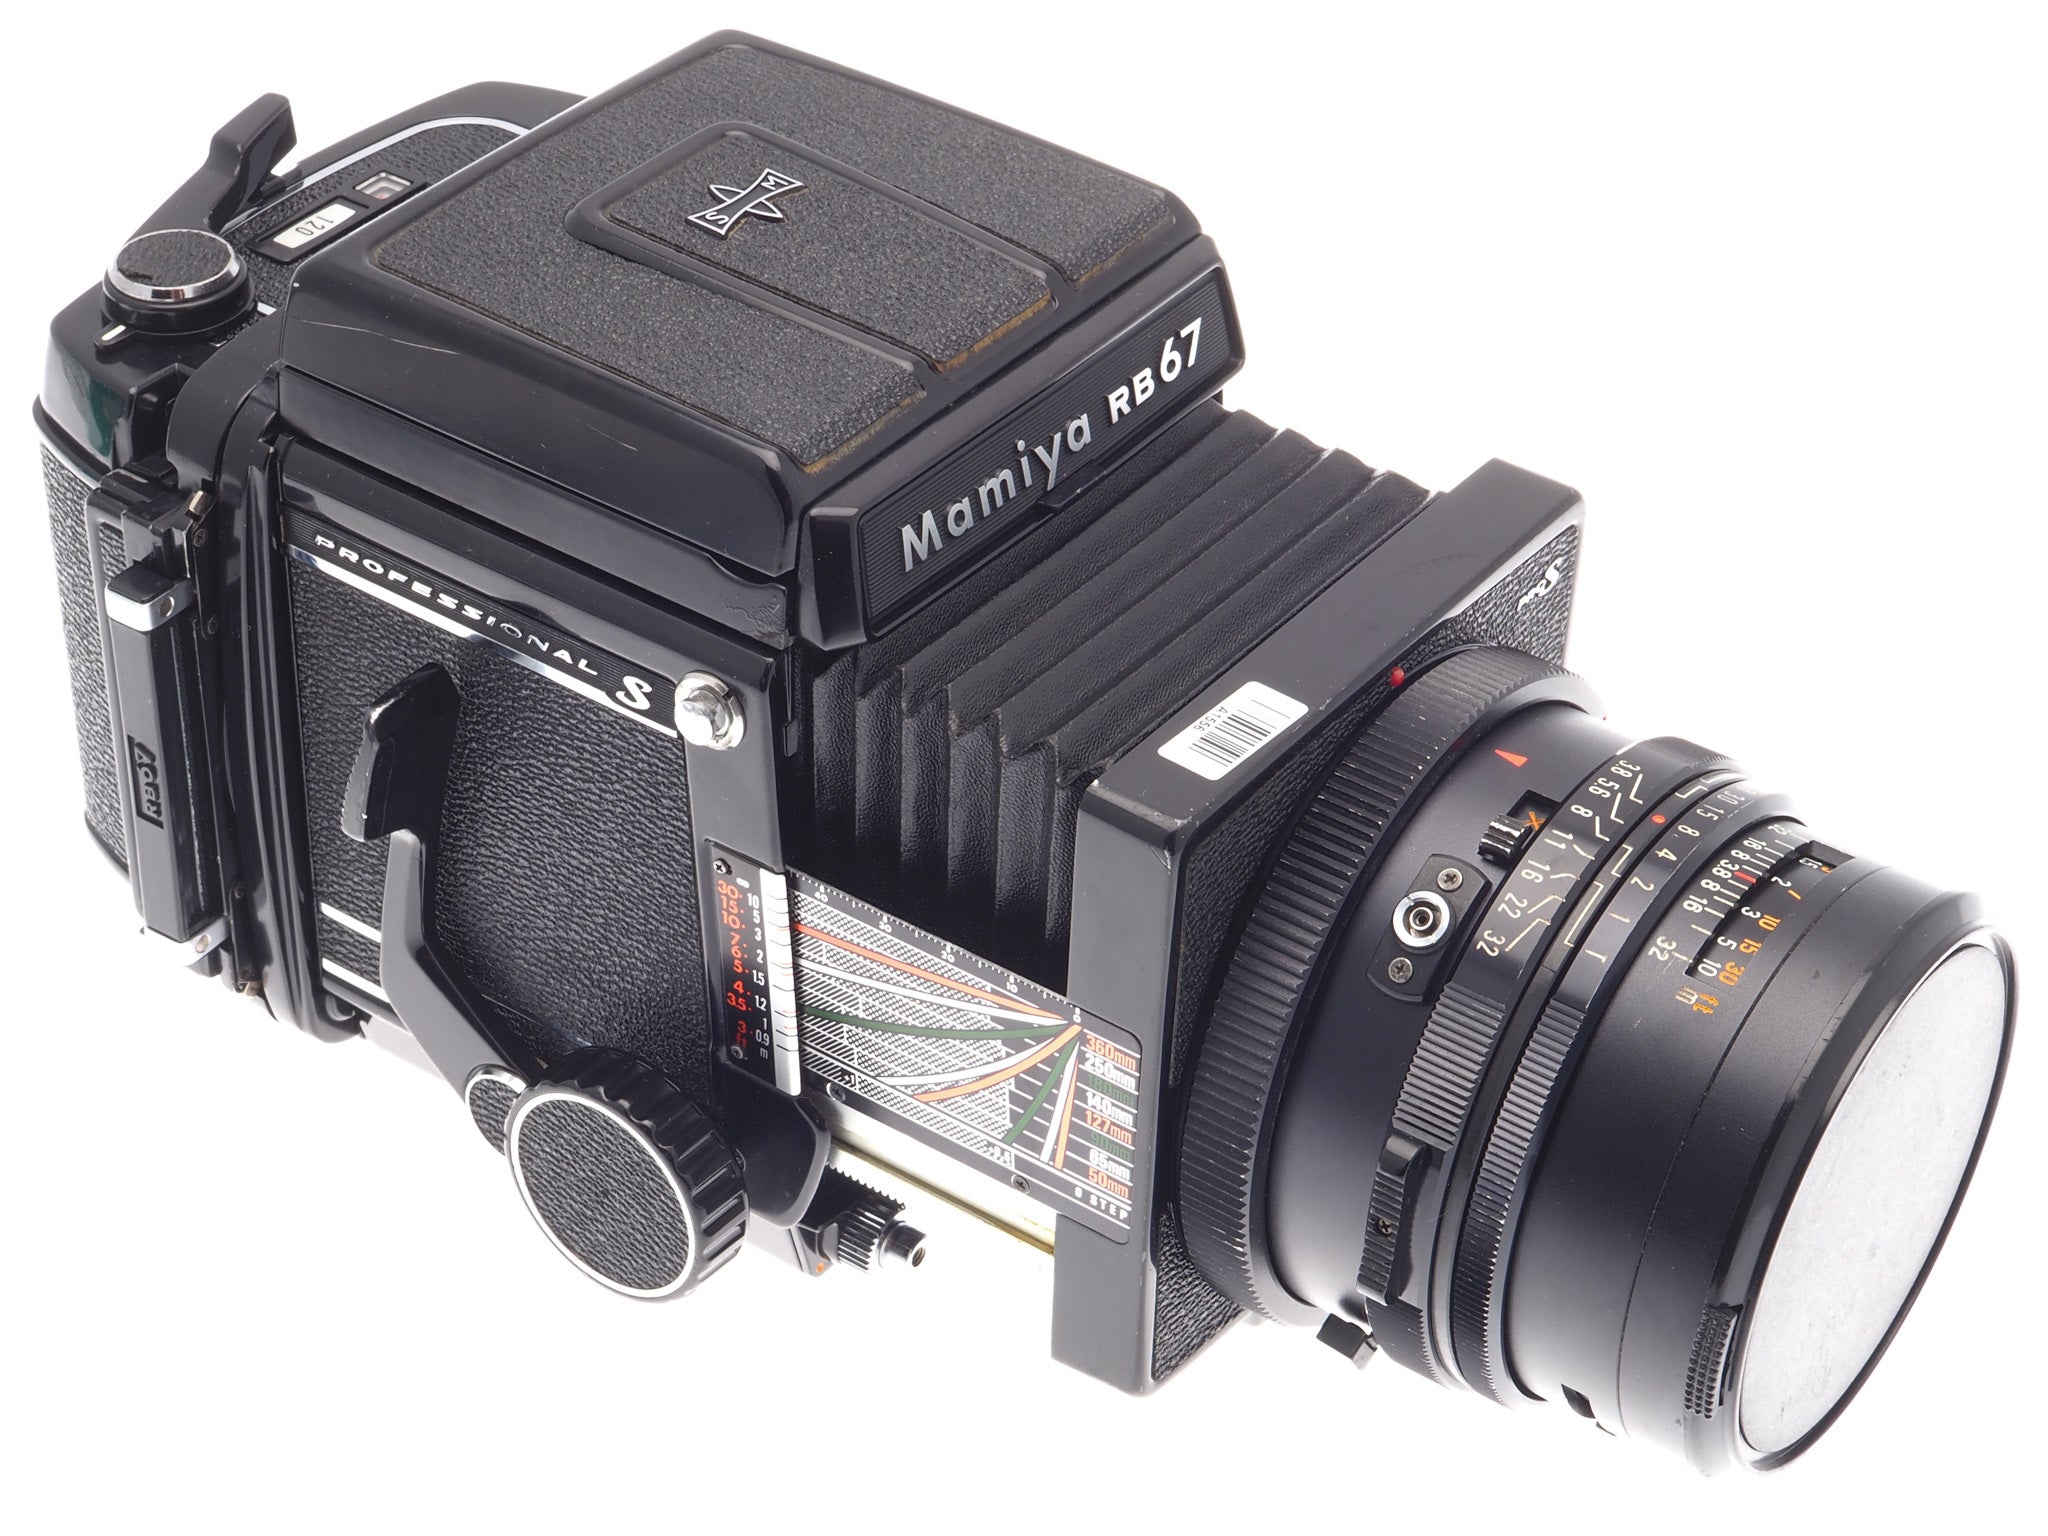 Mamiya RB67 Pro-S + 90mm f3.8 Sekor C + 120 Pro-S 6x7 Film Back + 